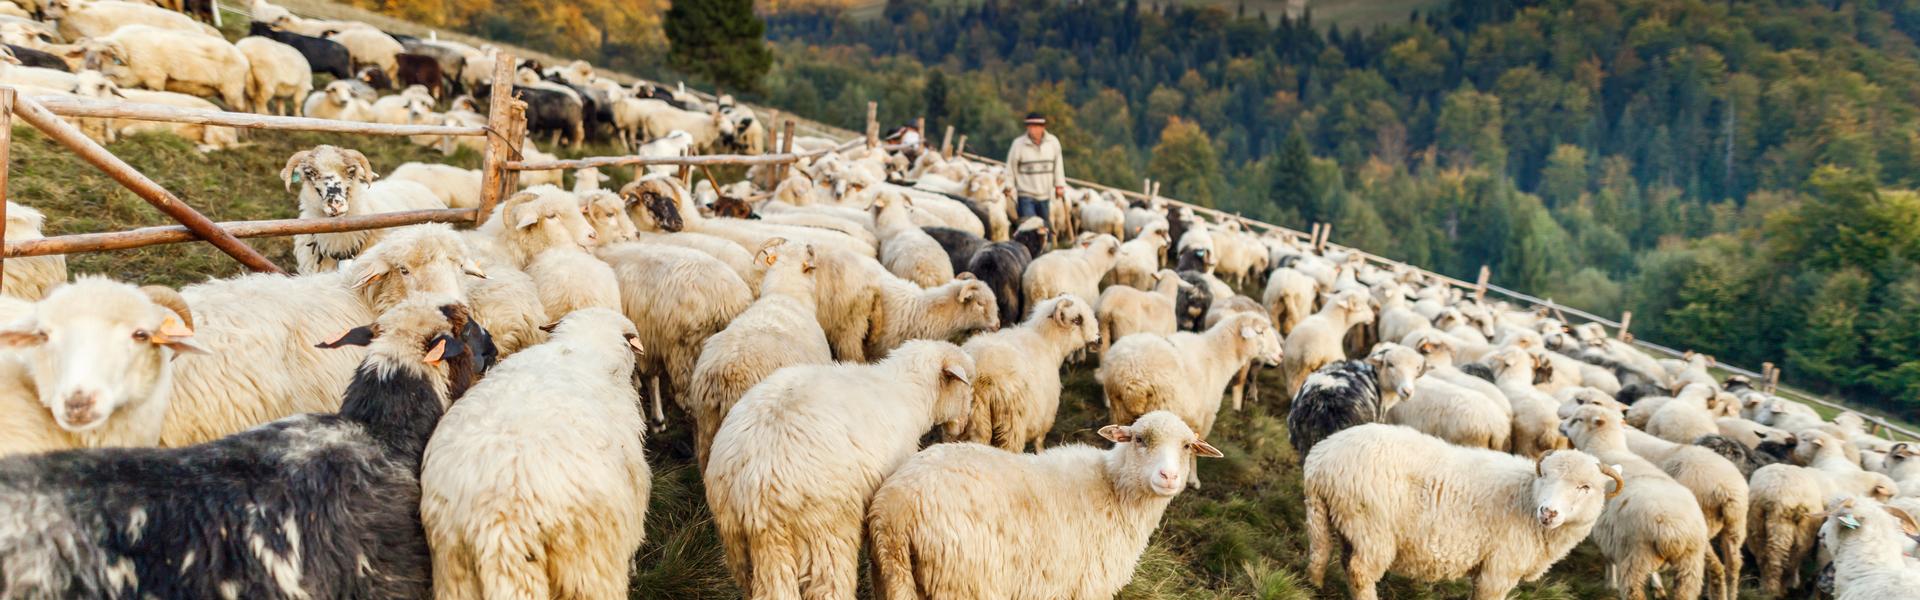 owce tłoczące się w stadzie